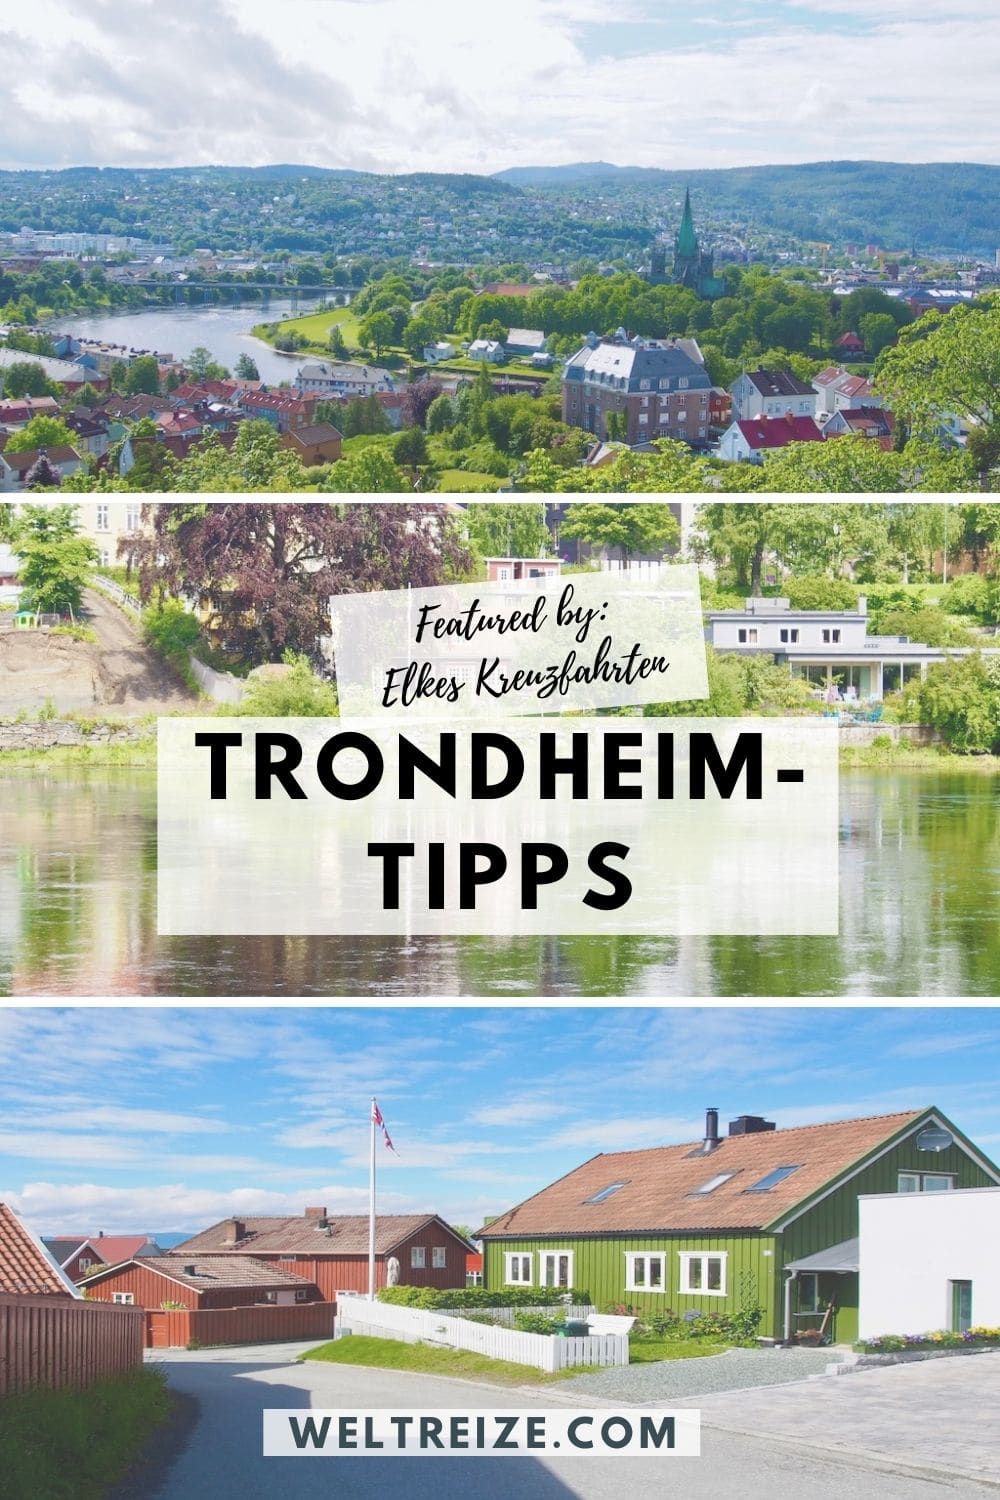 Trondheim-Tipps weitersagen